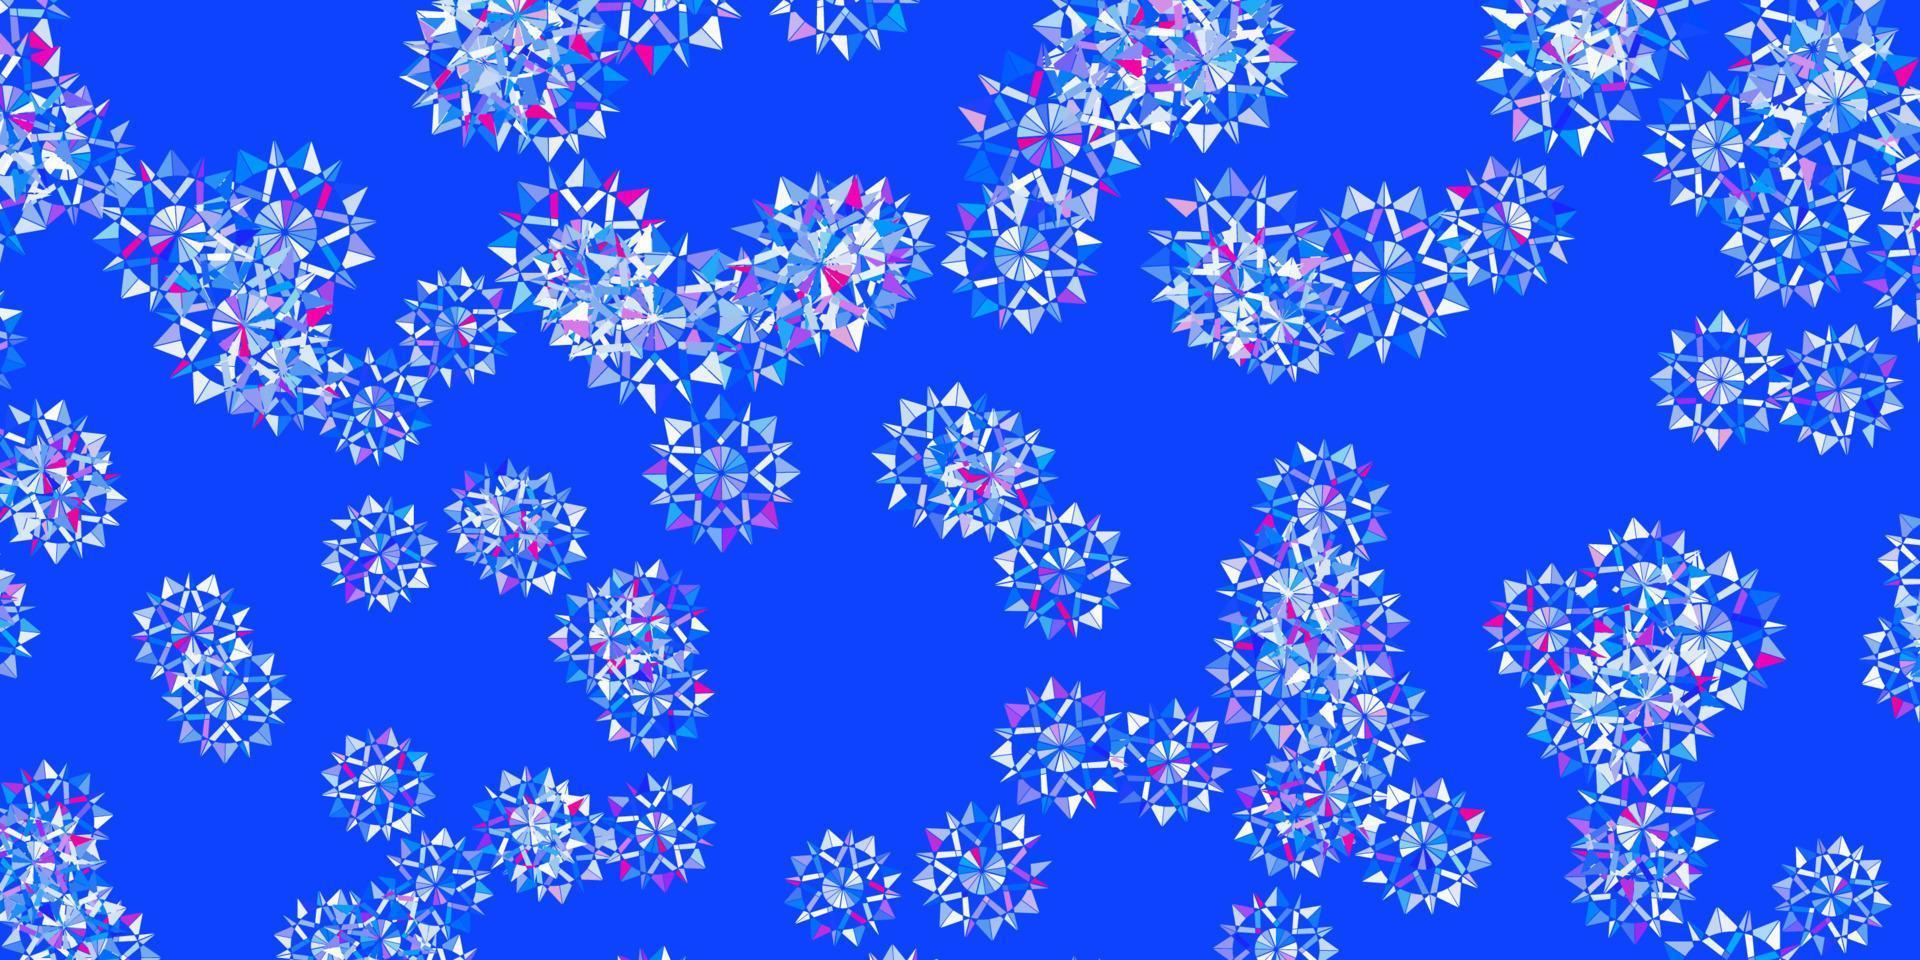 ljusblå, röd vektorbakgrund med julsnöflingor. vektor